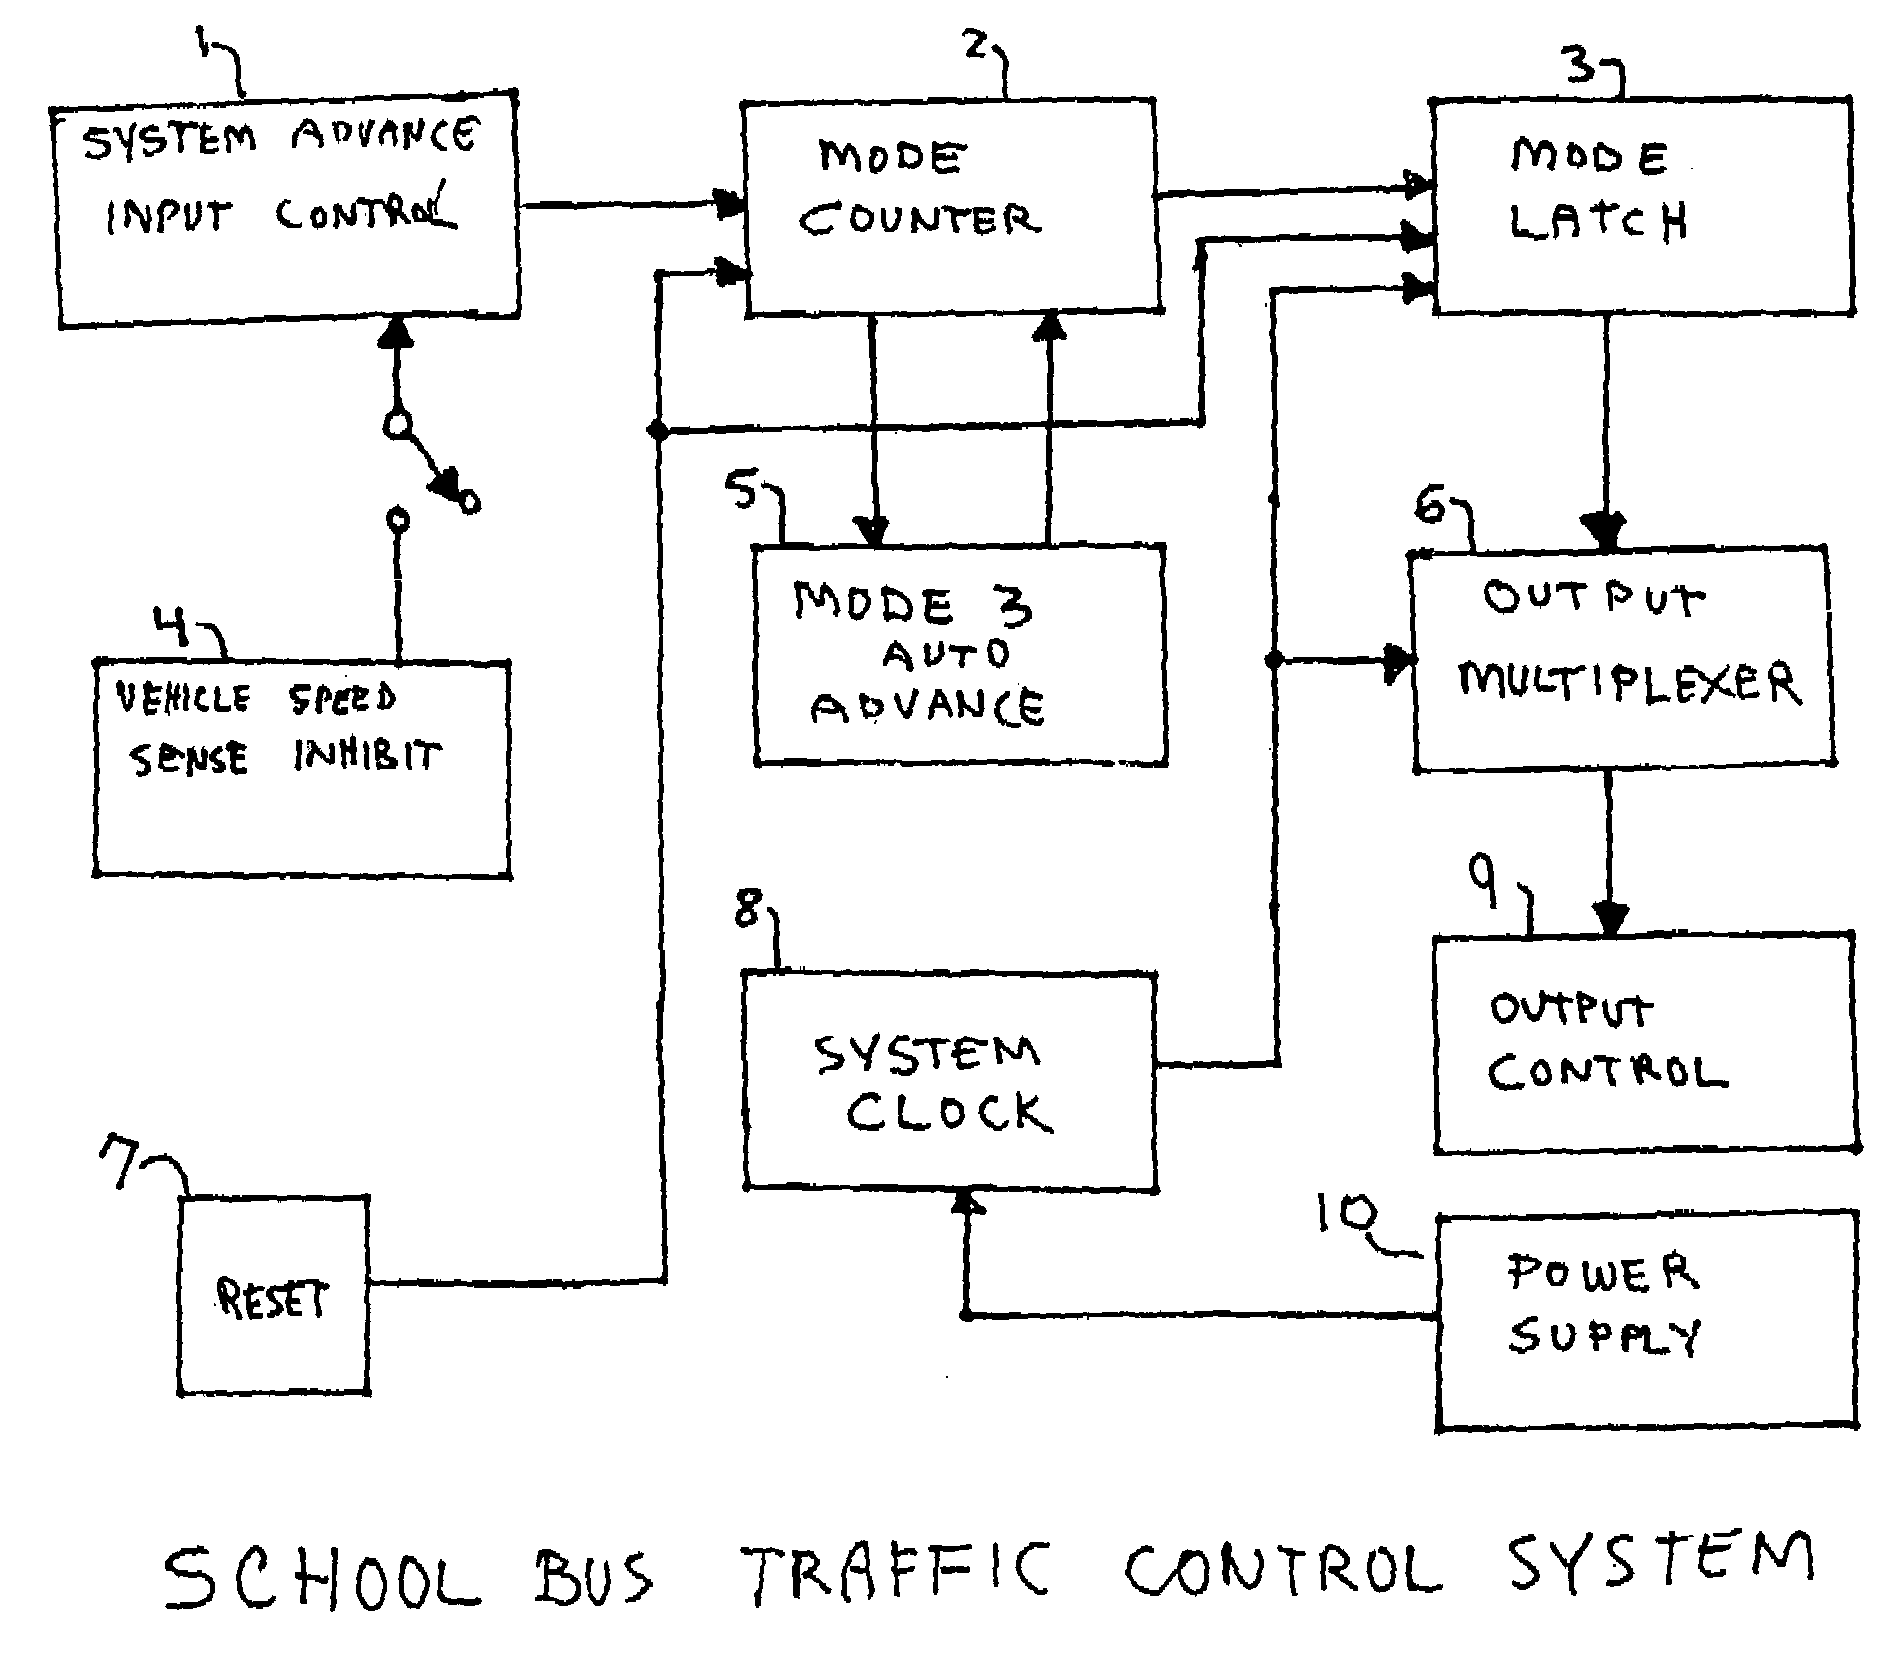 School bus traffic control system